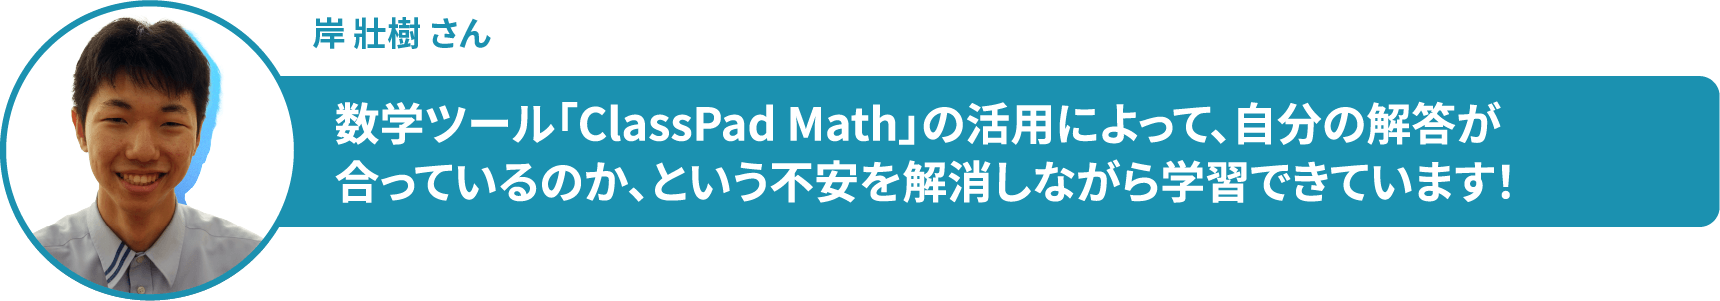 岸 壯樹 さん　数学ツール「ClassPad Math」の活用によって、自分の解答が 合っているのか、という不安を解消しながら学習できています！